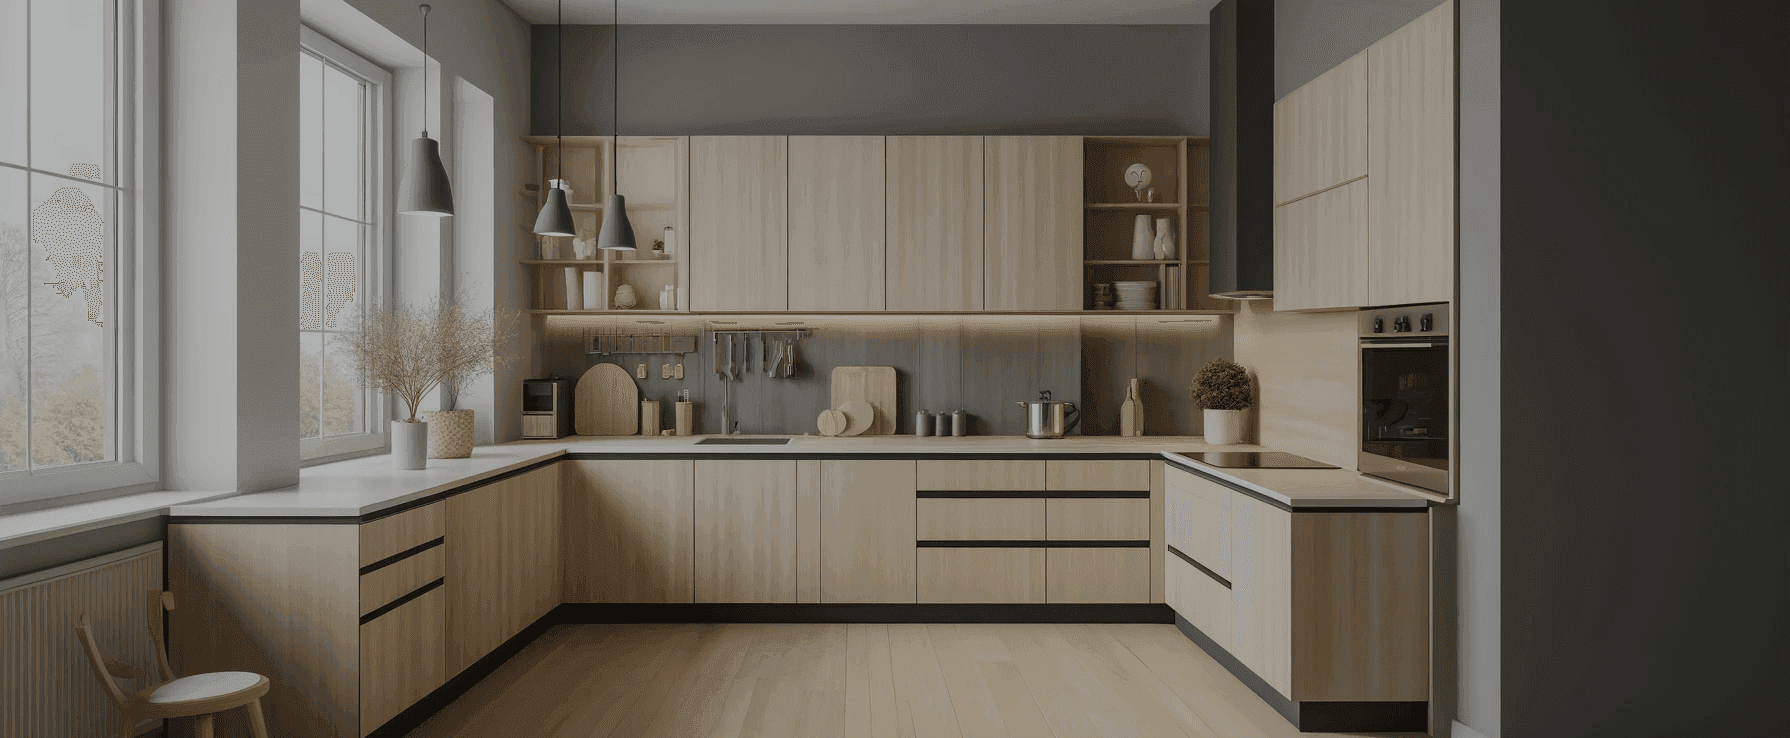 Eine moderne Küche, bei der helles Holz wie Birke für die Schränke und Arbeitsplatten verwendet wird. Das Design ist schlank und minimalistisch, mit klaren Linien 